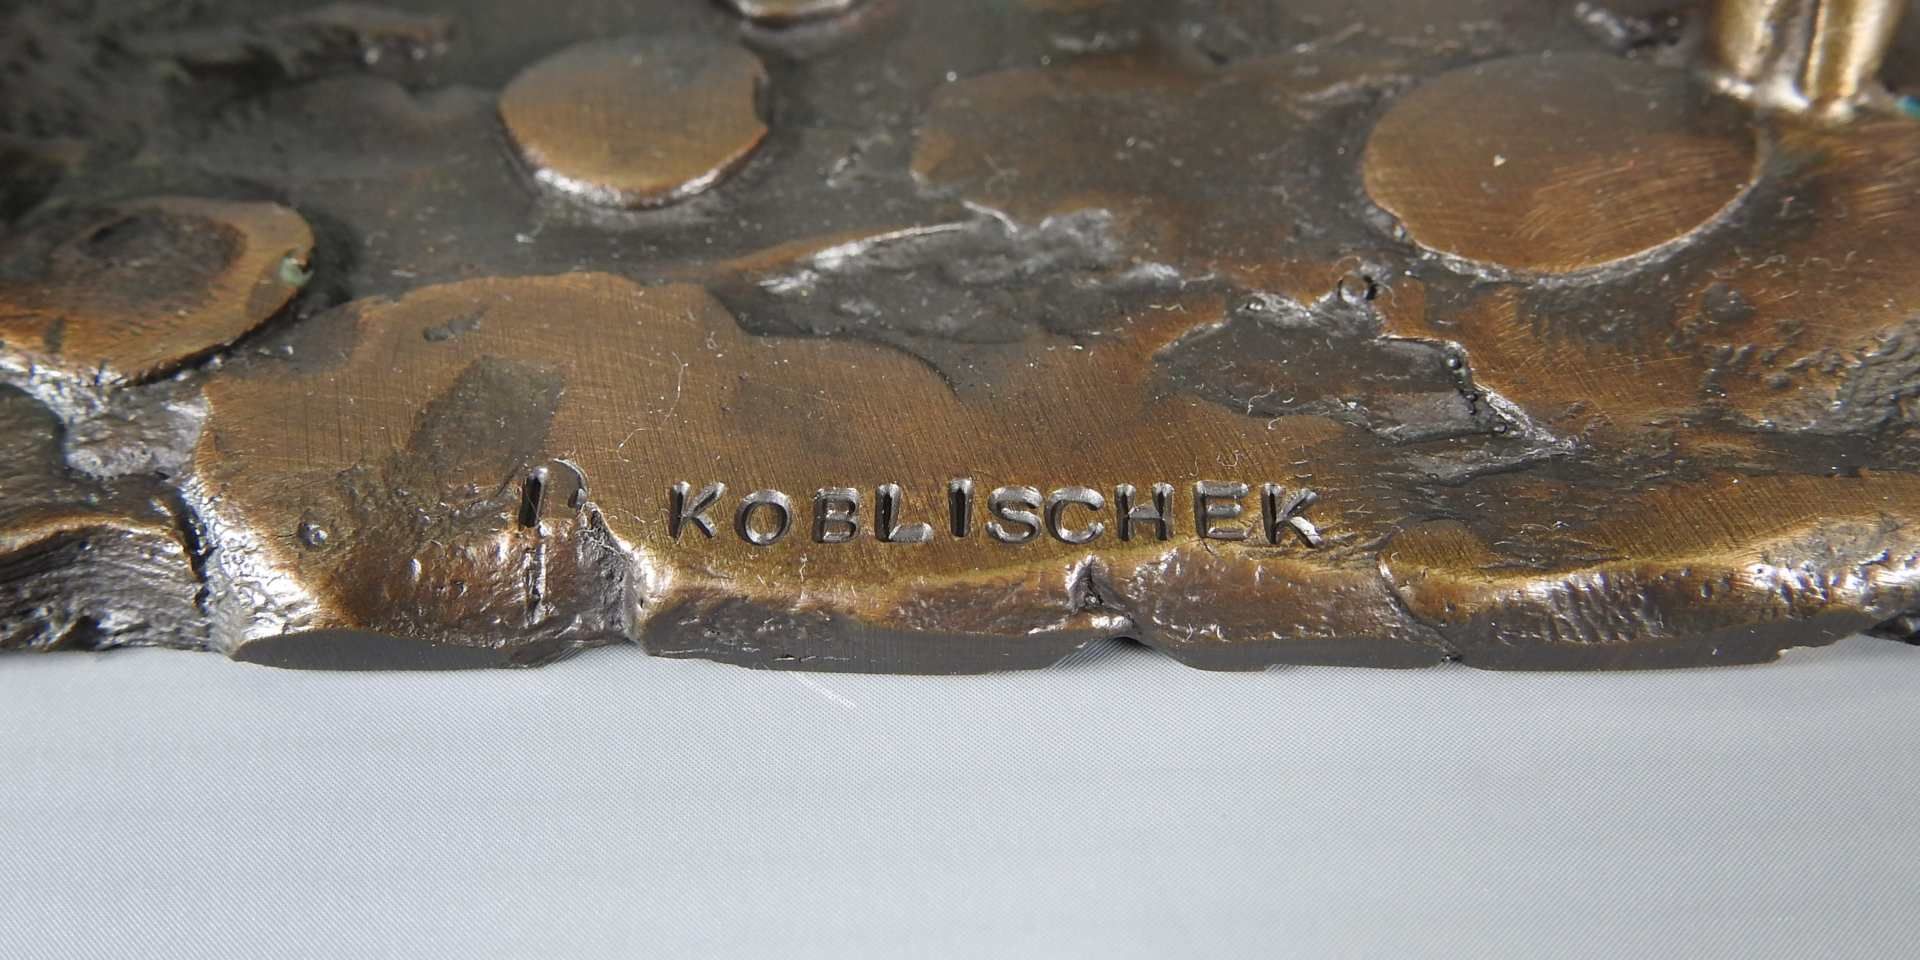 Ingo Koblischek, 1933 Böhmen/Mähren - 2020 Friedrichshafen Bronze, braun patiniert. - Image 5 of 7